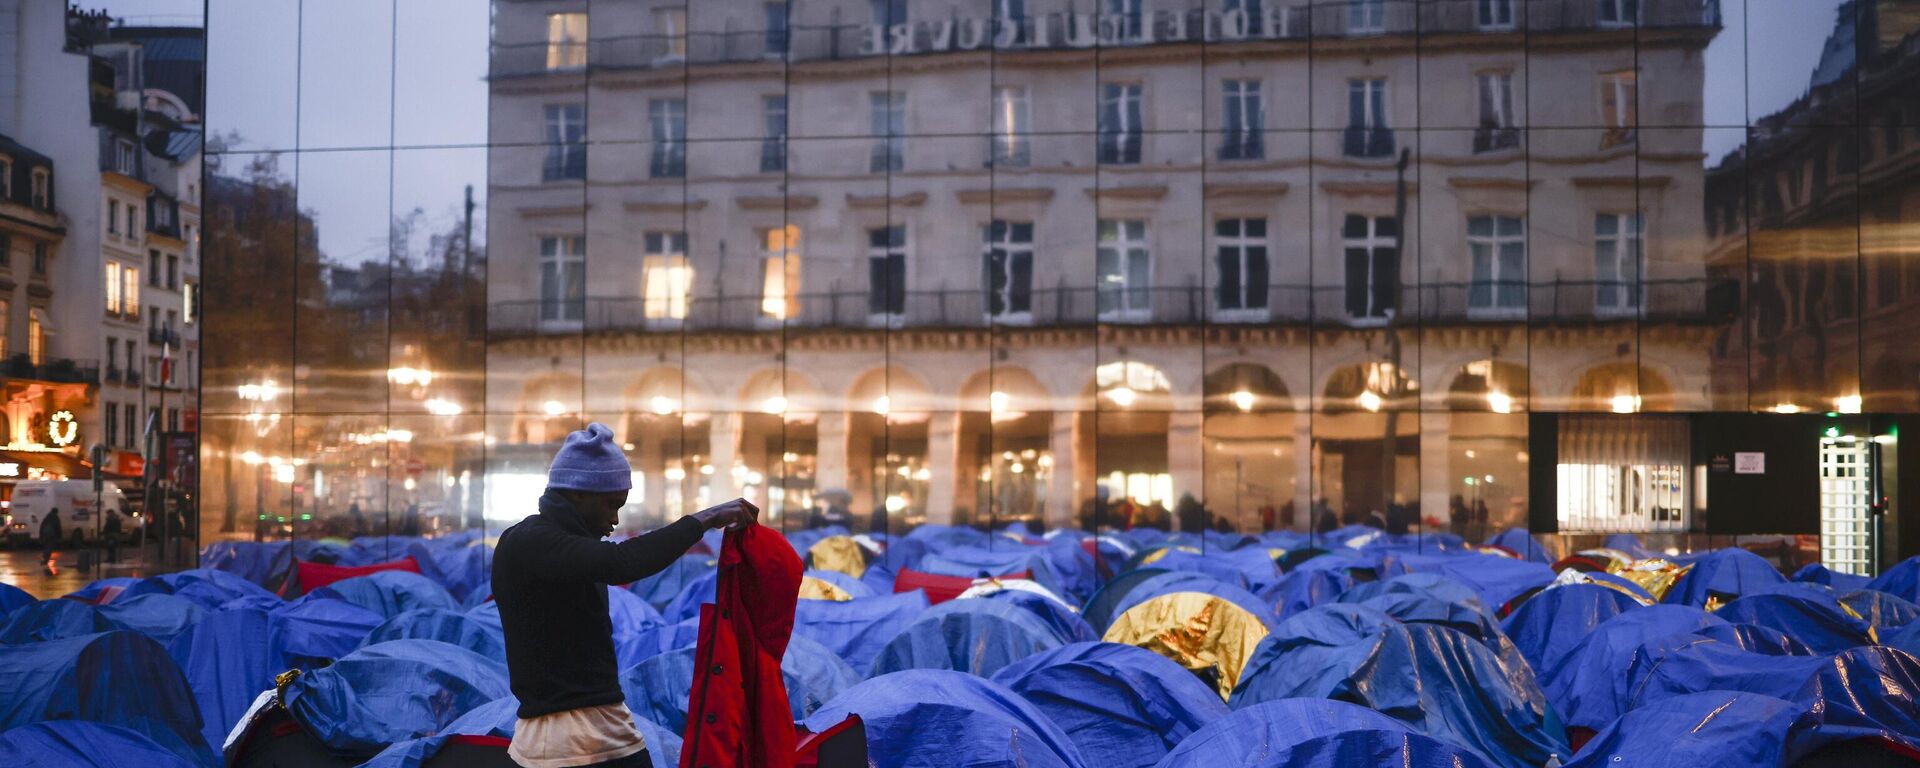 Fransa’nın başkenti Paris’te Afrikalı kaçak göçmenler tarafından Anayasa Konseyi ile Louvre Müzesi’nin bulunduğu bölgede kurulan çadır kamp, polis tarafından ablukaya alındı. - Sputnik Türkiye, 1920, 05.12.2022